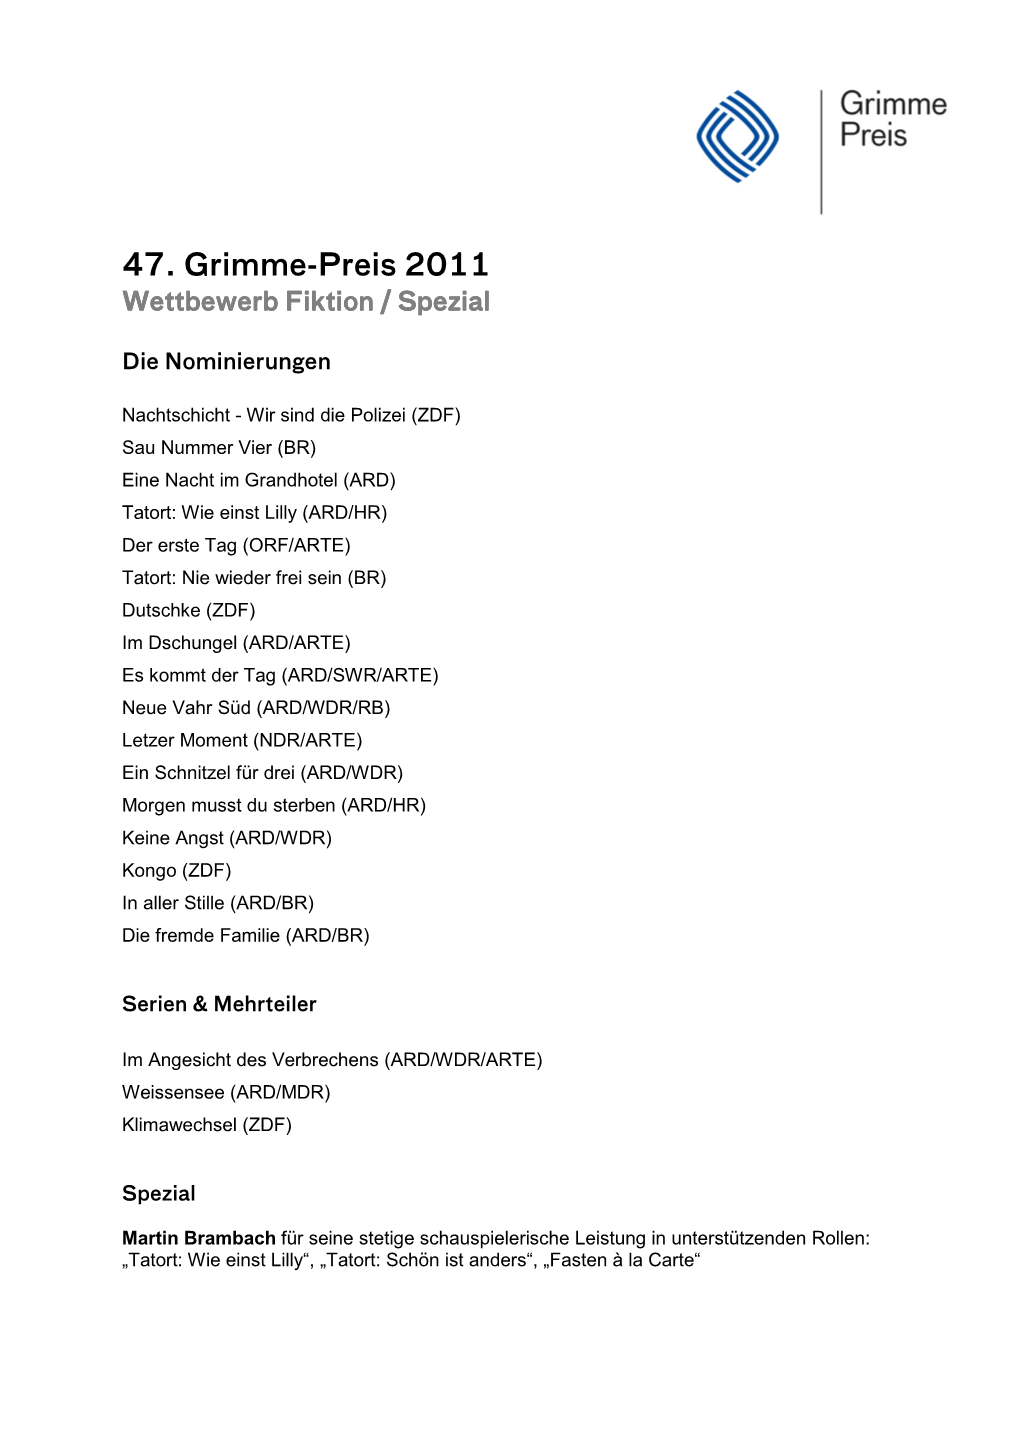 47. Grimme-Preis 2011 Wettbewerb Fiktion / Spezial